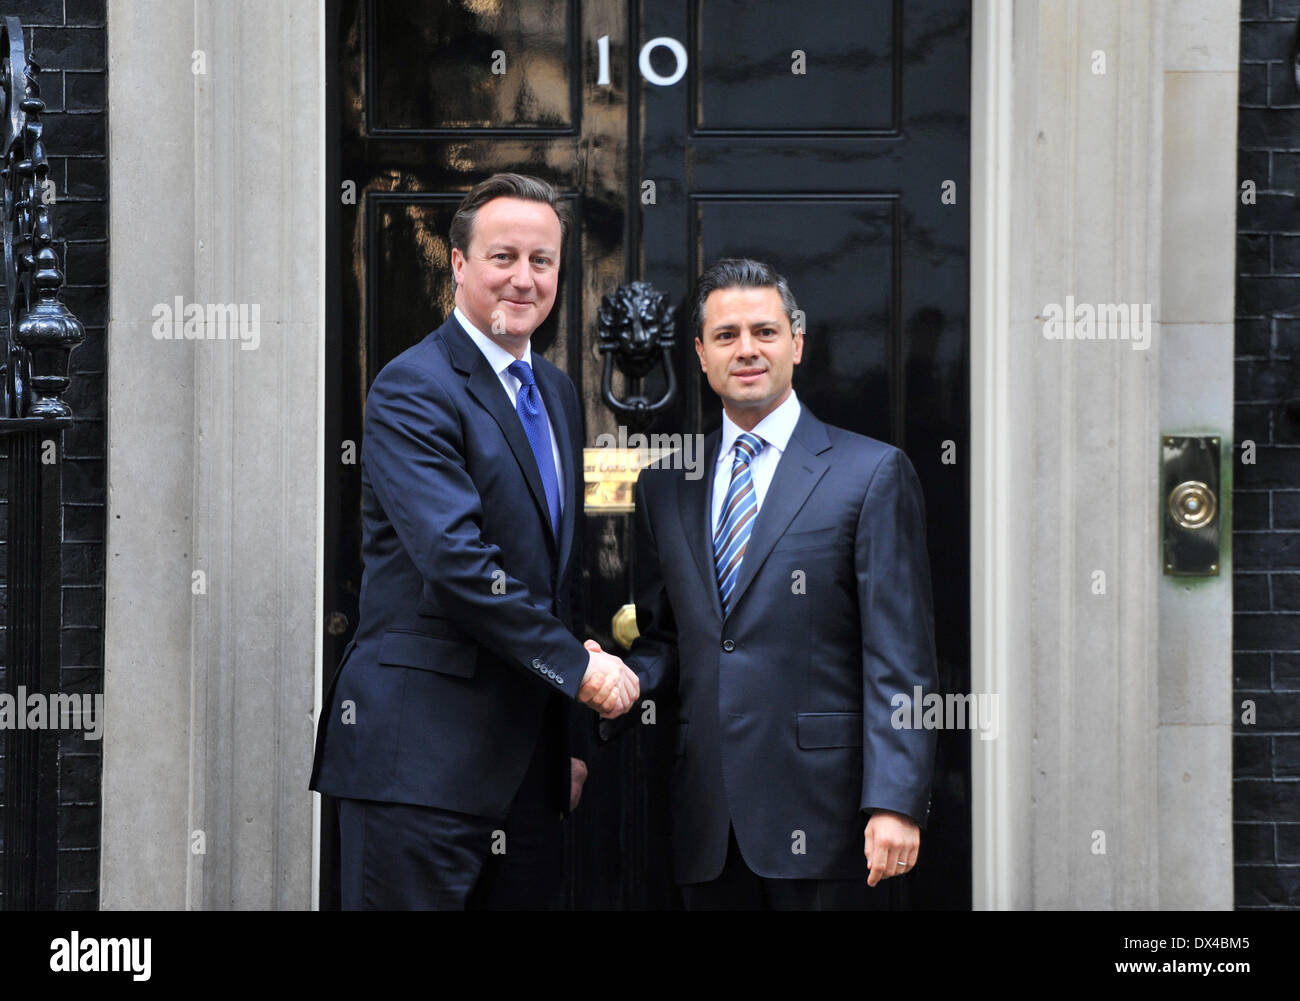 Il Presidente messicano-elect Enrique Peña Nieto (R) incontra il Primo Ministro britannico David Cameron (L) a 10 Downing Street. Londra, Inghilterra - 16.10.12 Dove: Londra, Regno Unito quando: 16 Ott 2012 Foto Stock